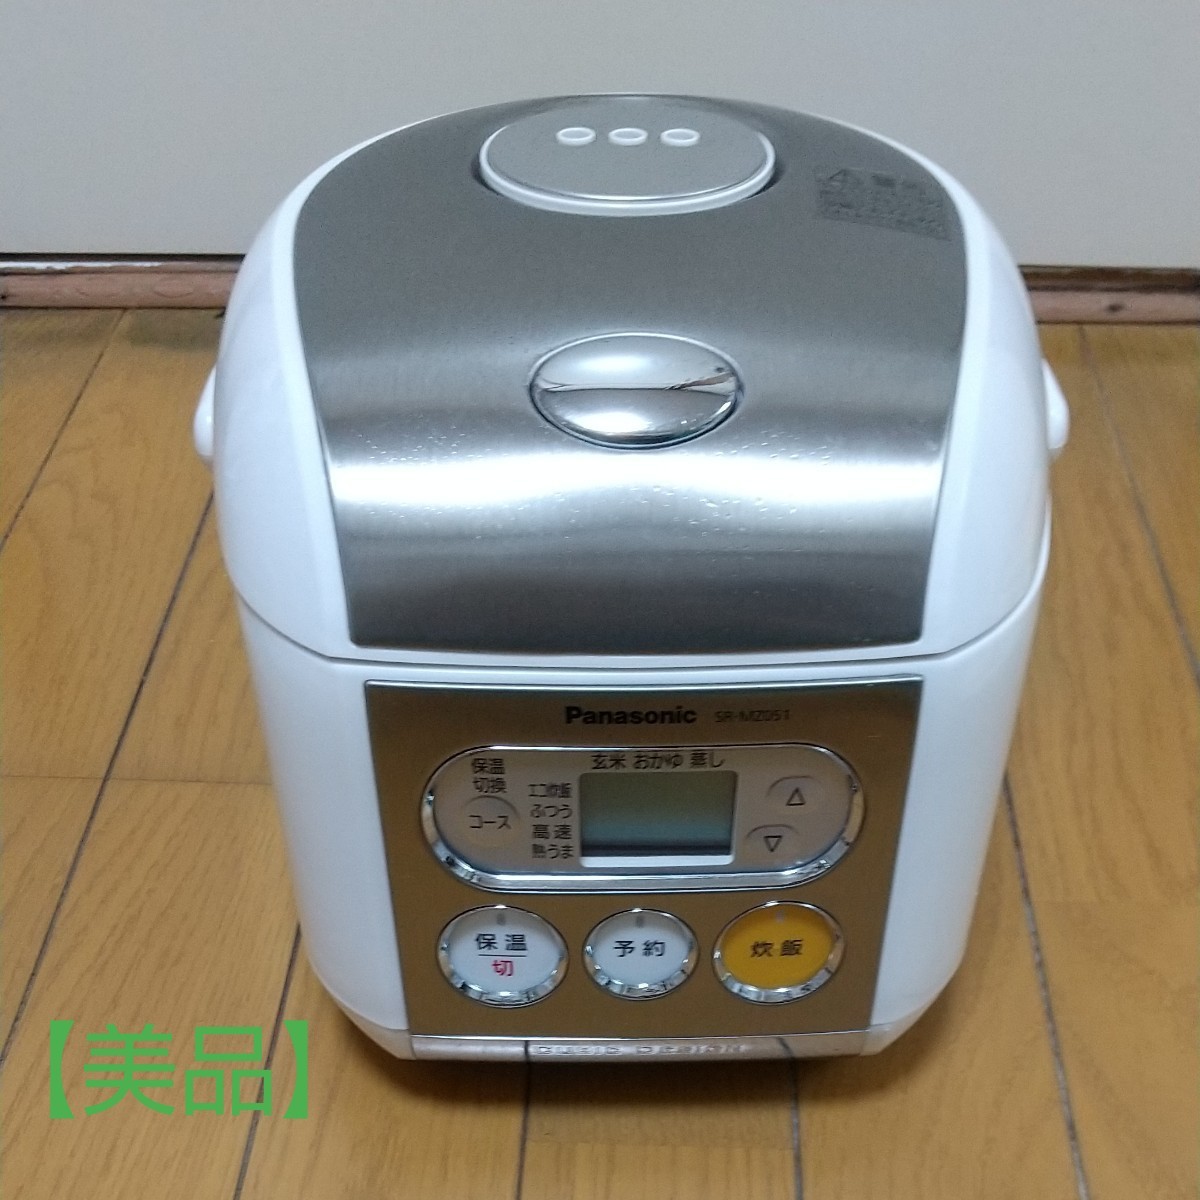 新規購入 Panasonicパナソニック三合炊き電子ジャー炊飯器SR-MZ051